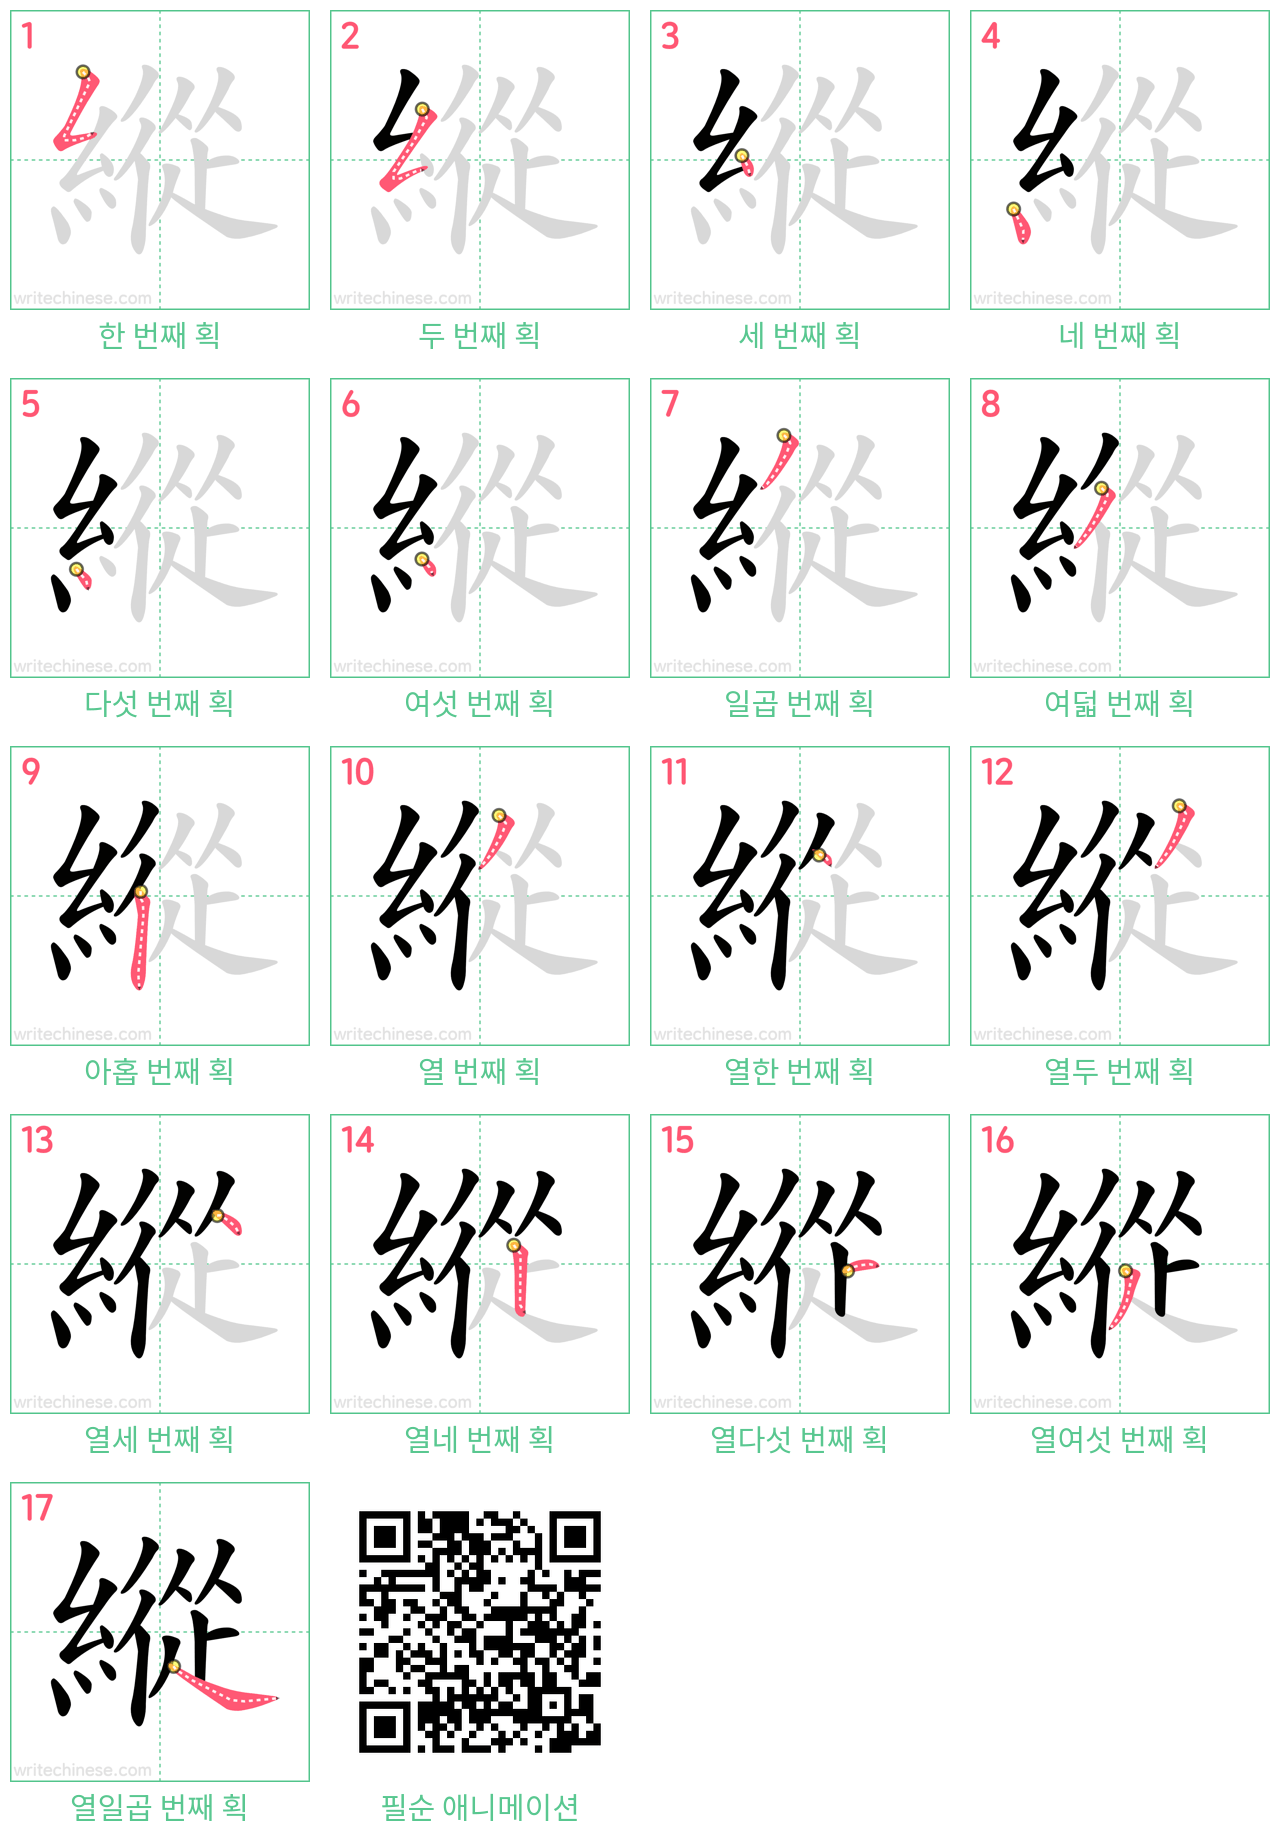 縱 step-by-step stroke order diagrams